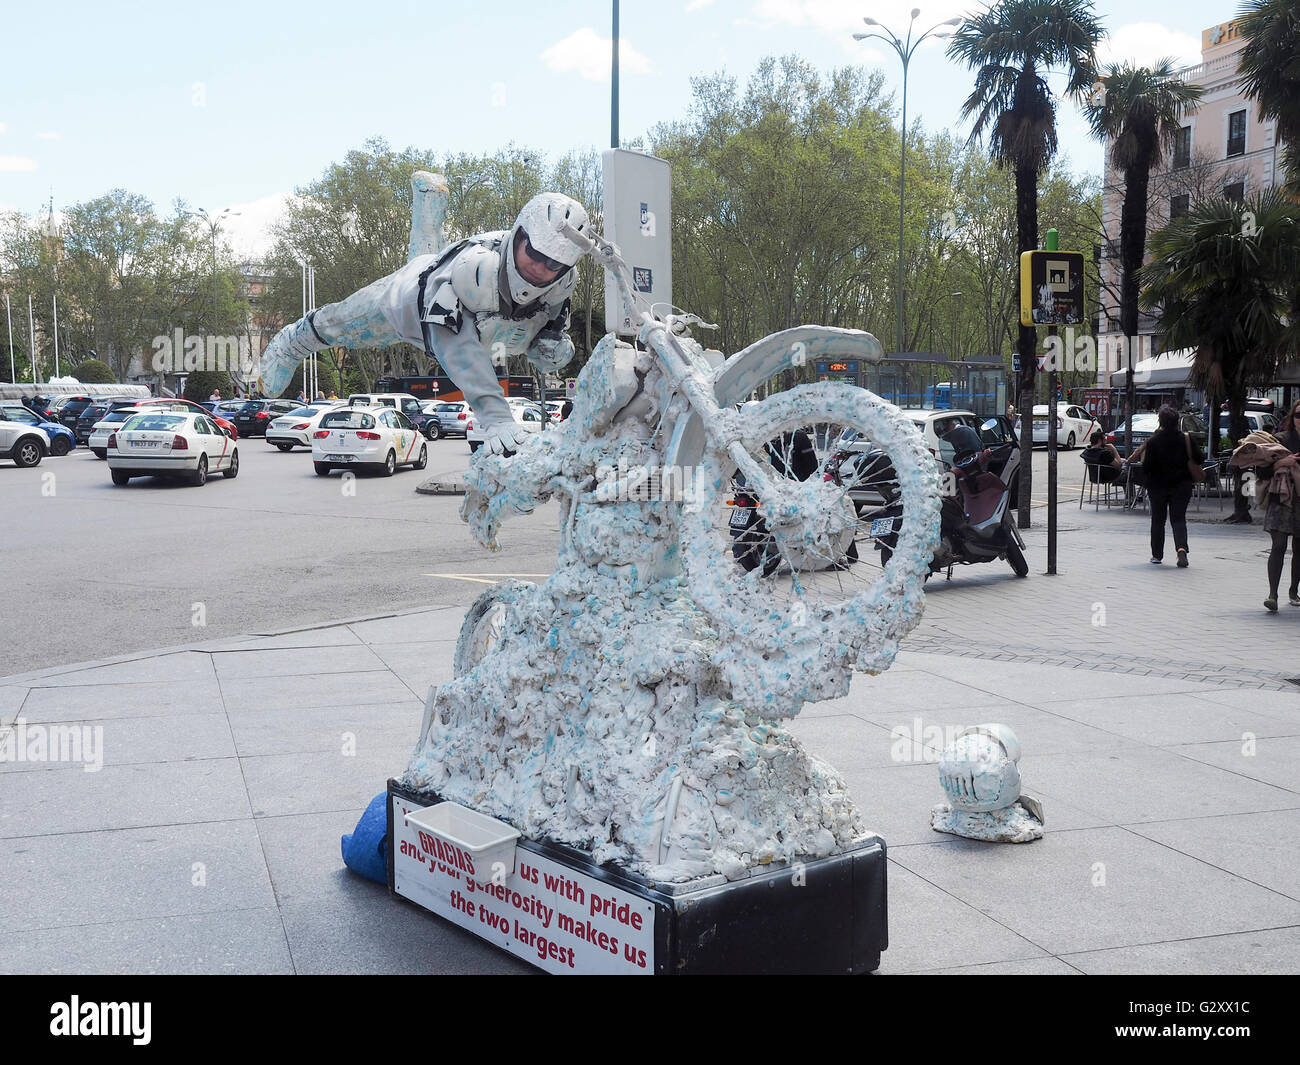 Menschliche Statue Street Performer, Madrid, Spanien Stockfoto